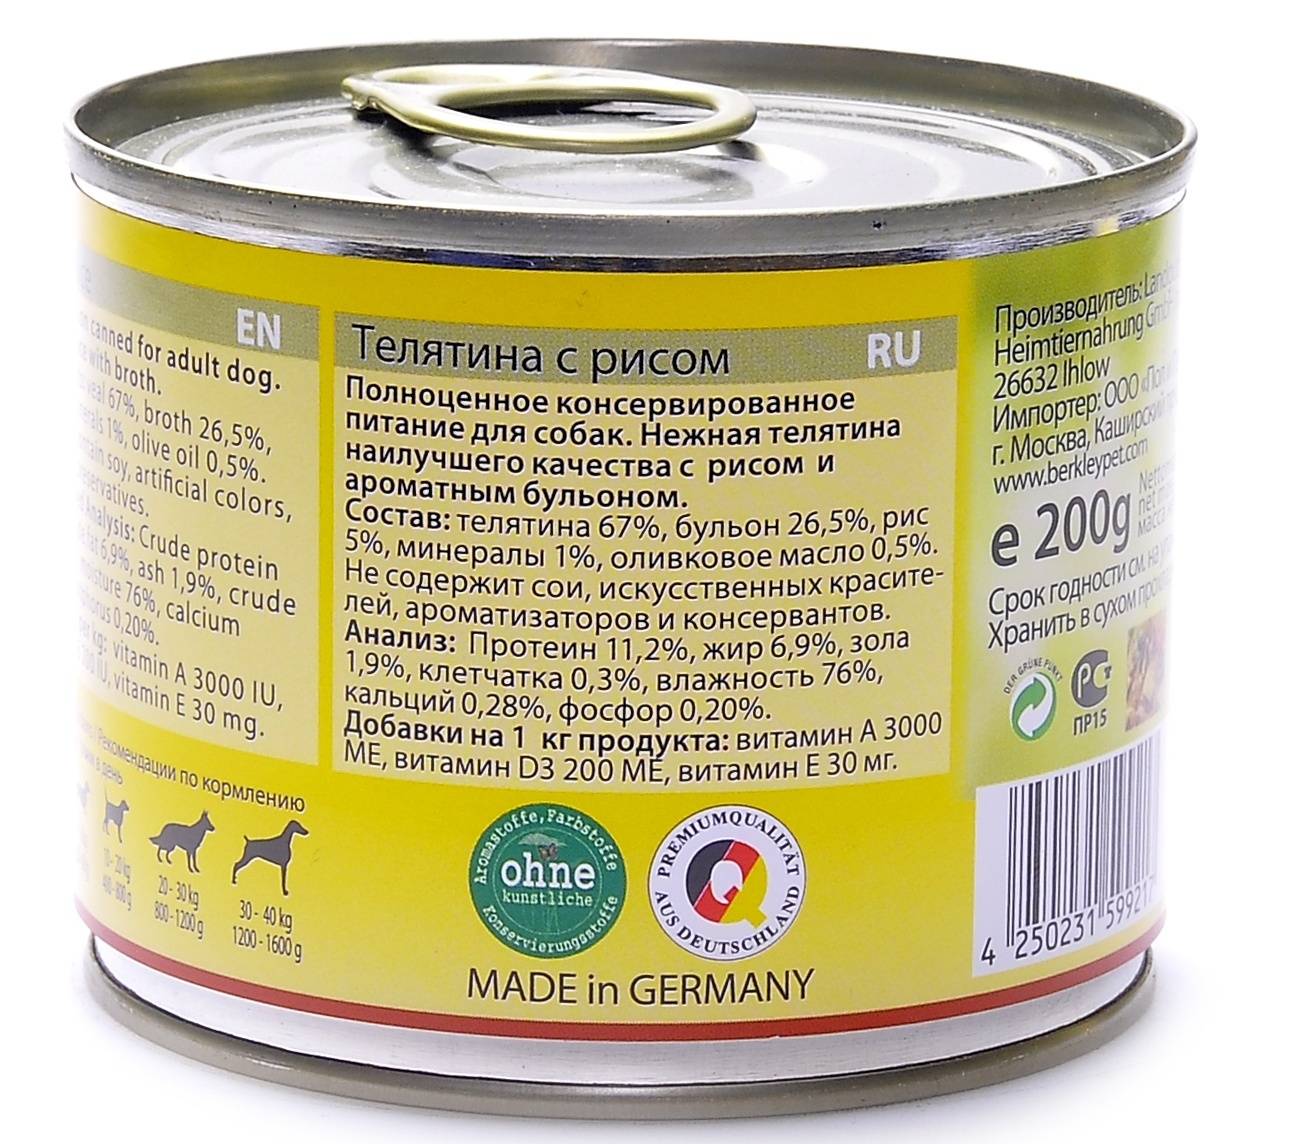 Обзор сухих кормов и консерв для собак от фирмы «грандин» с описаниями